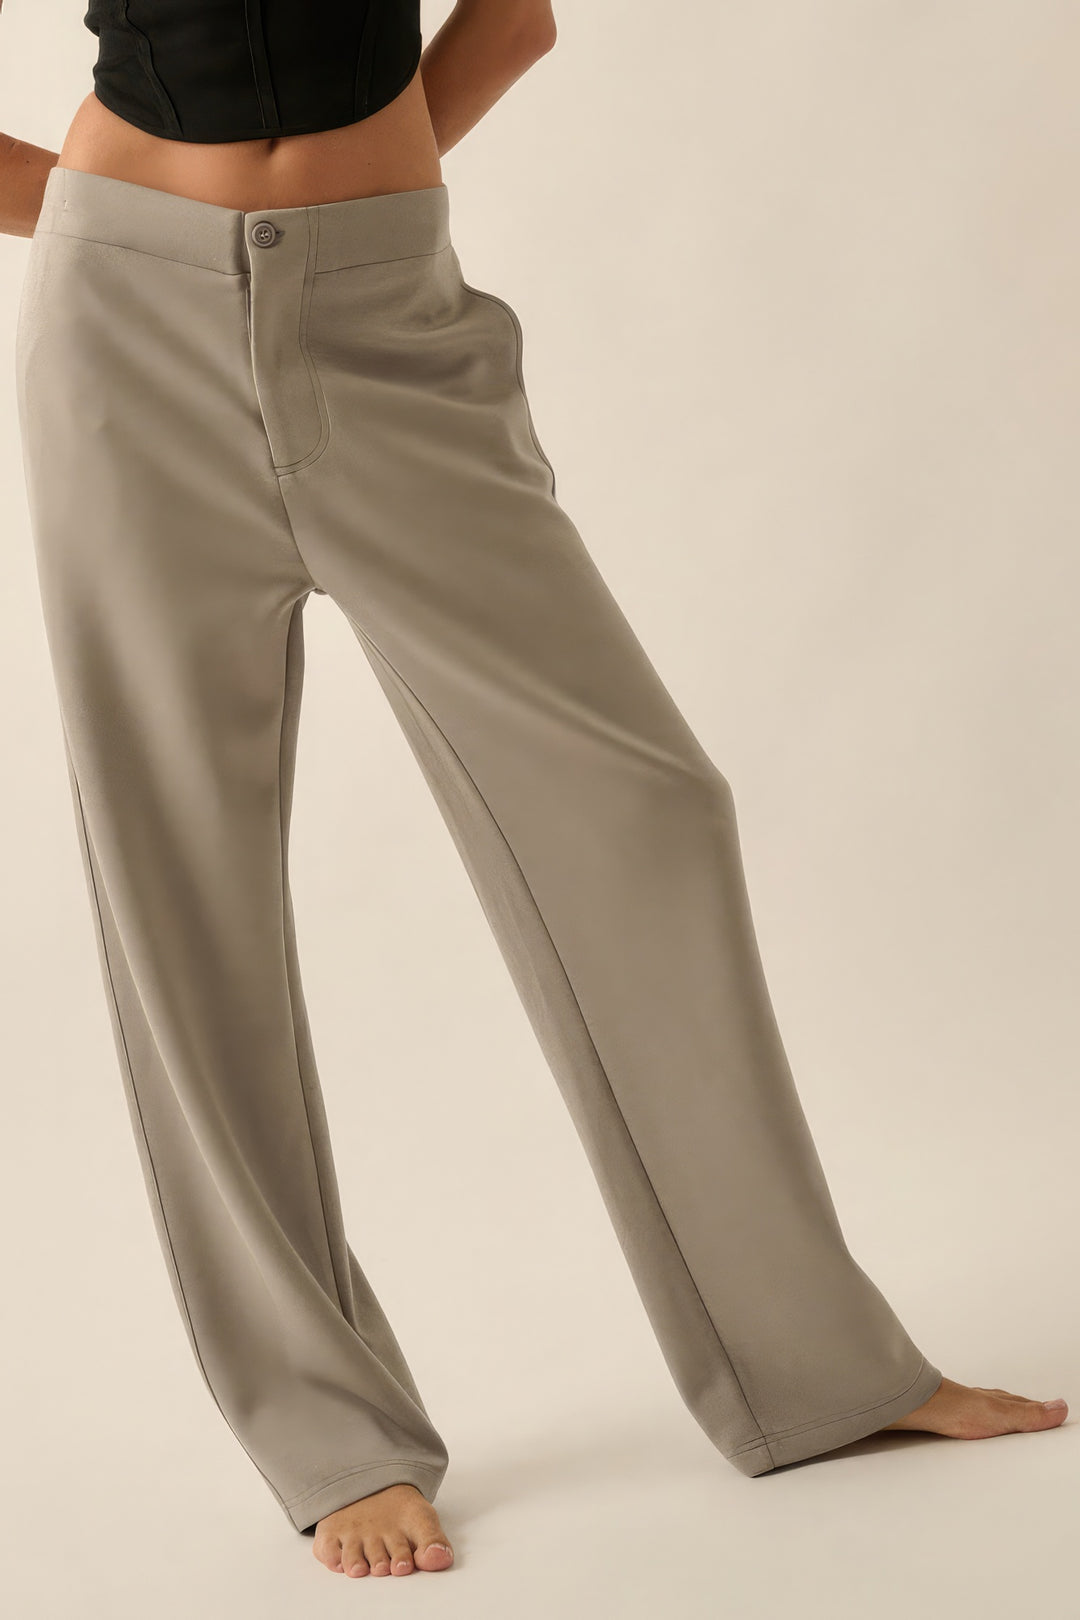 Premium Scuba High Waist Button Zip Up Fly Pants - bertofonsi